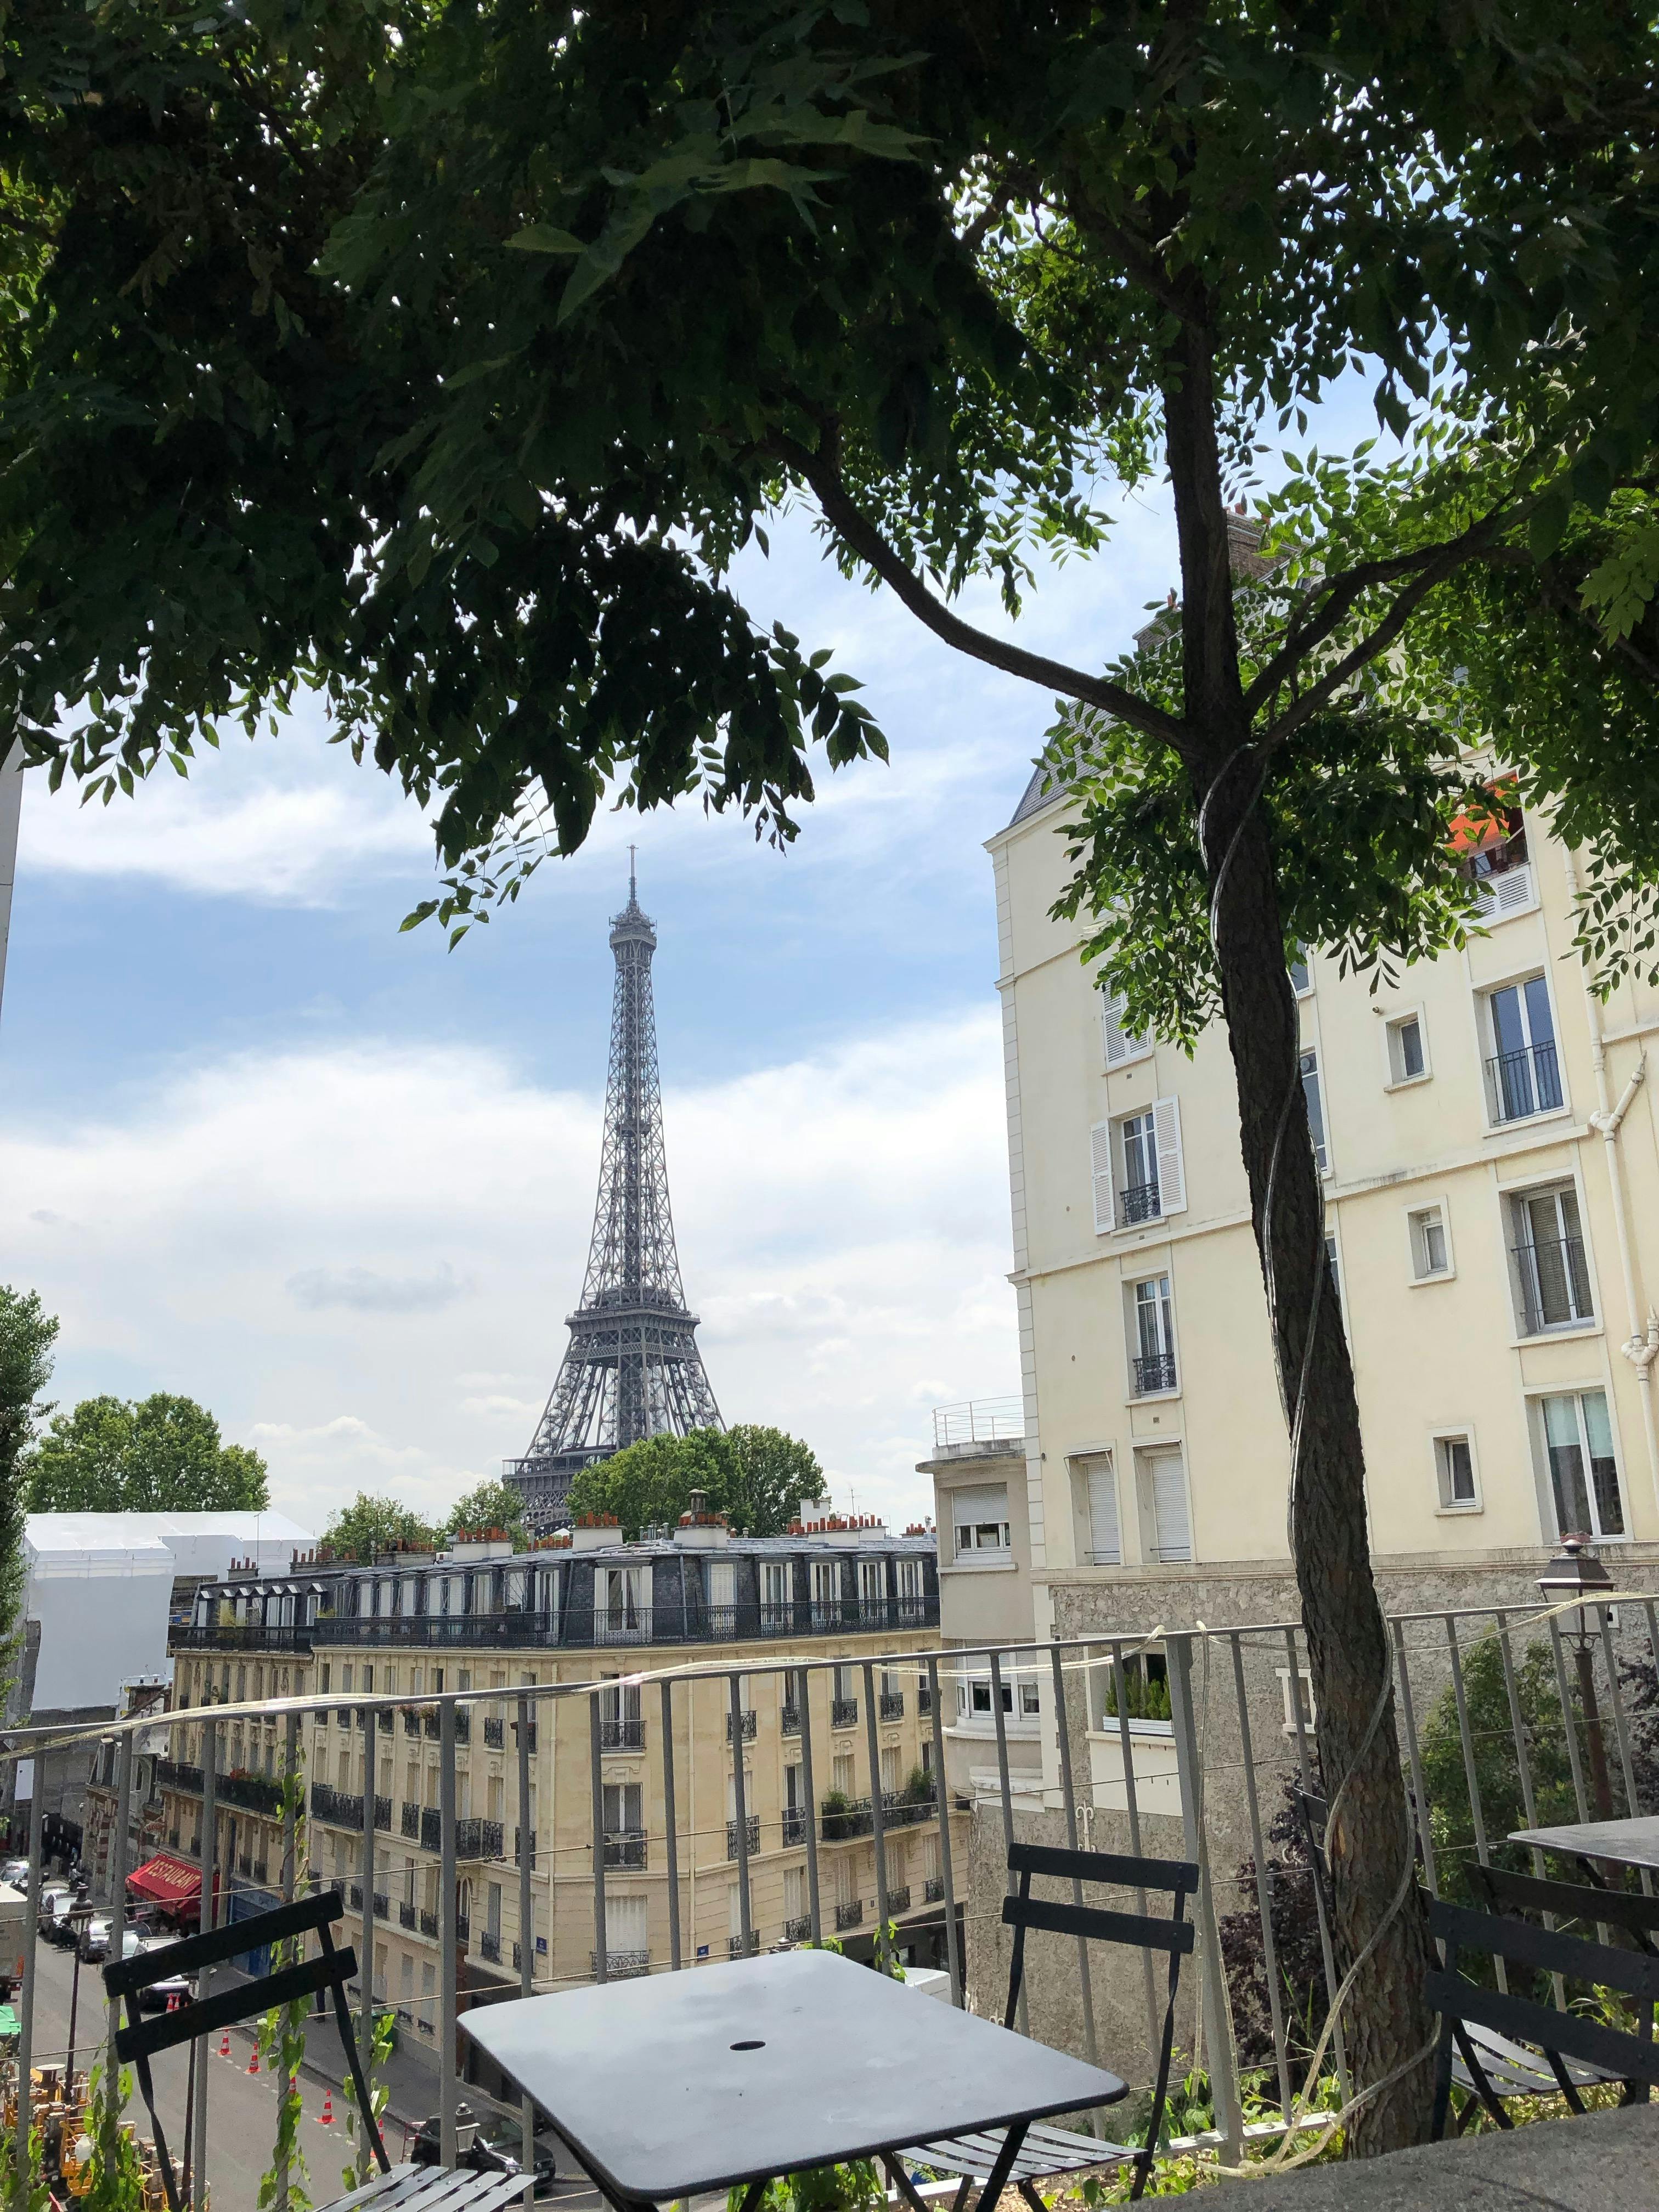 Recorrido de degustación de pasteles y mercados franceses alrededor de la Torre Eiffel